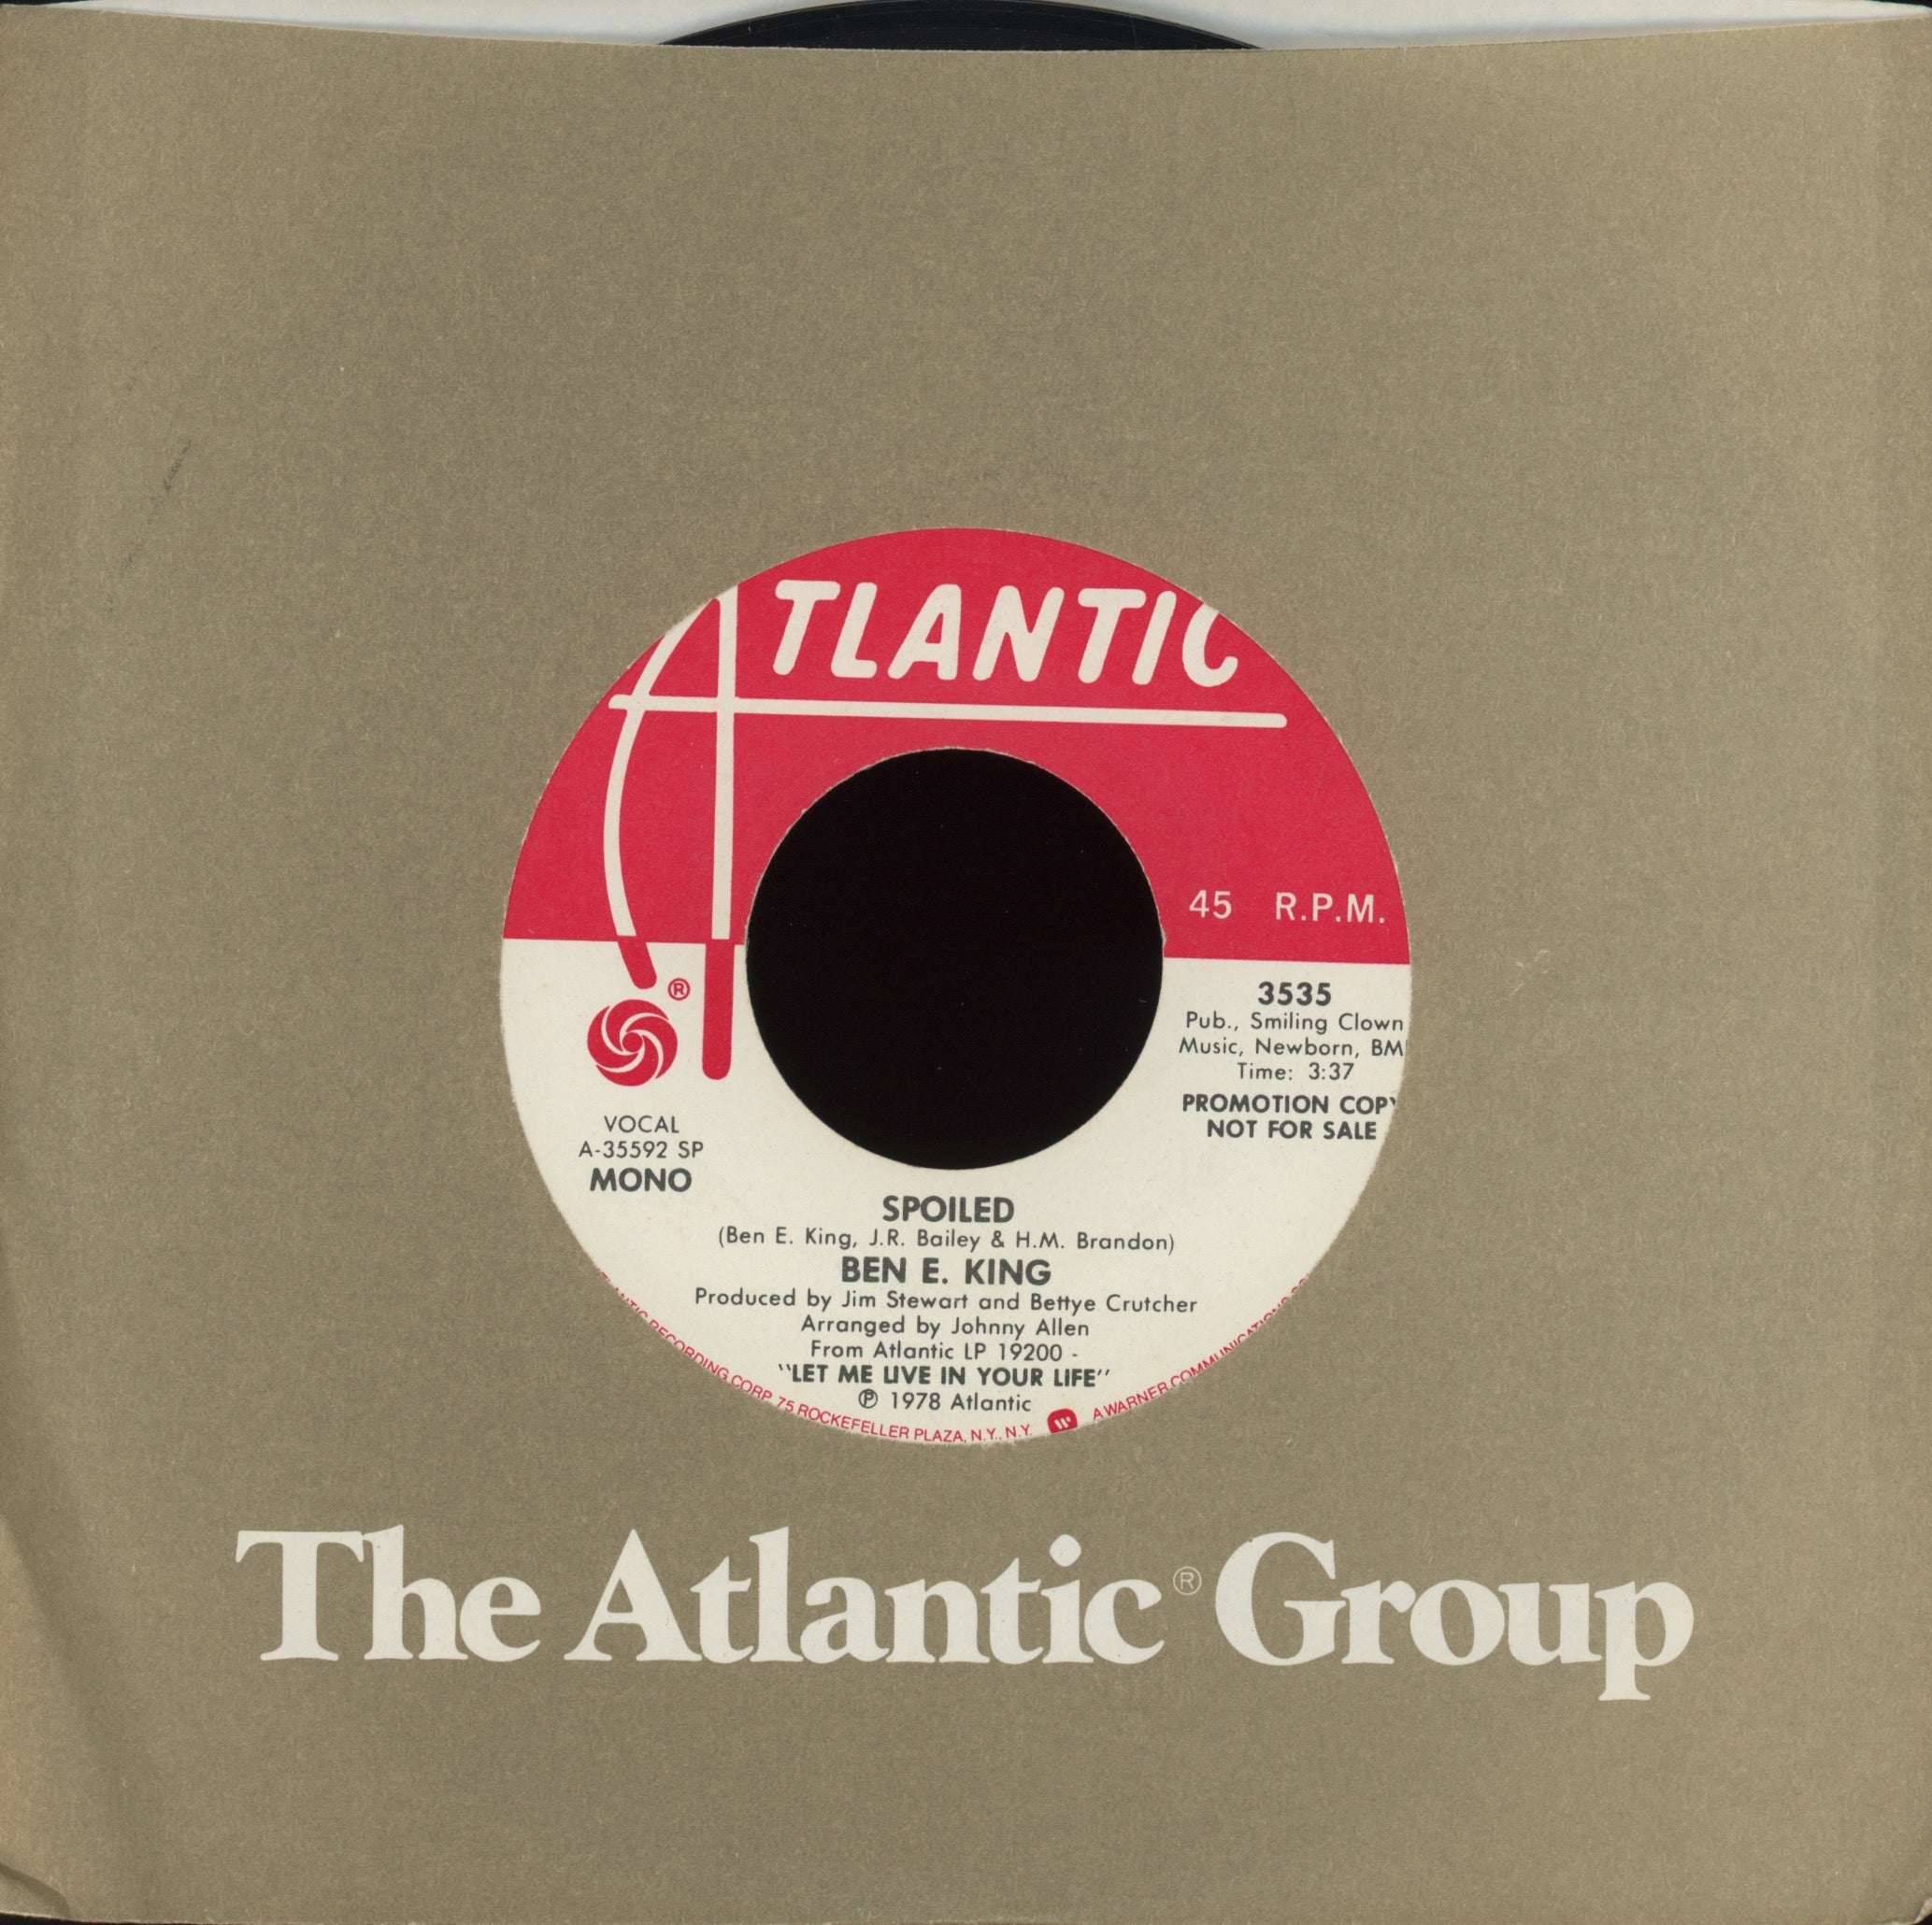 Ben E. King - Spoiled on Atlantic 70's Soul Stepper 45